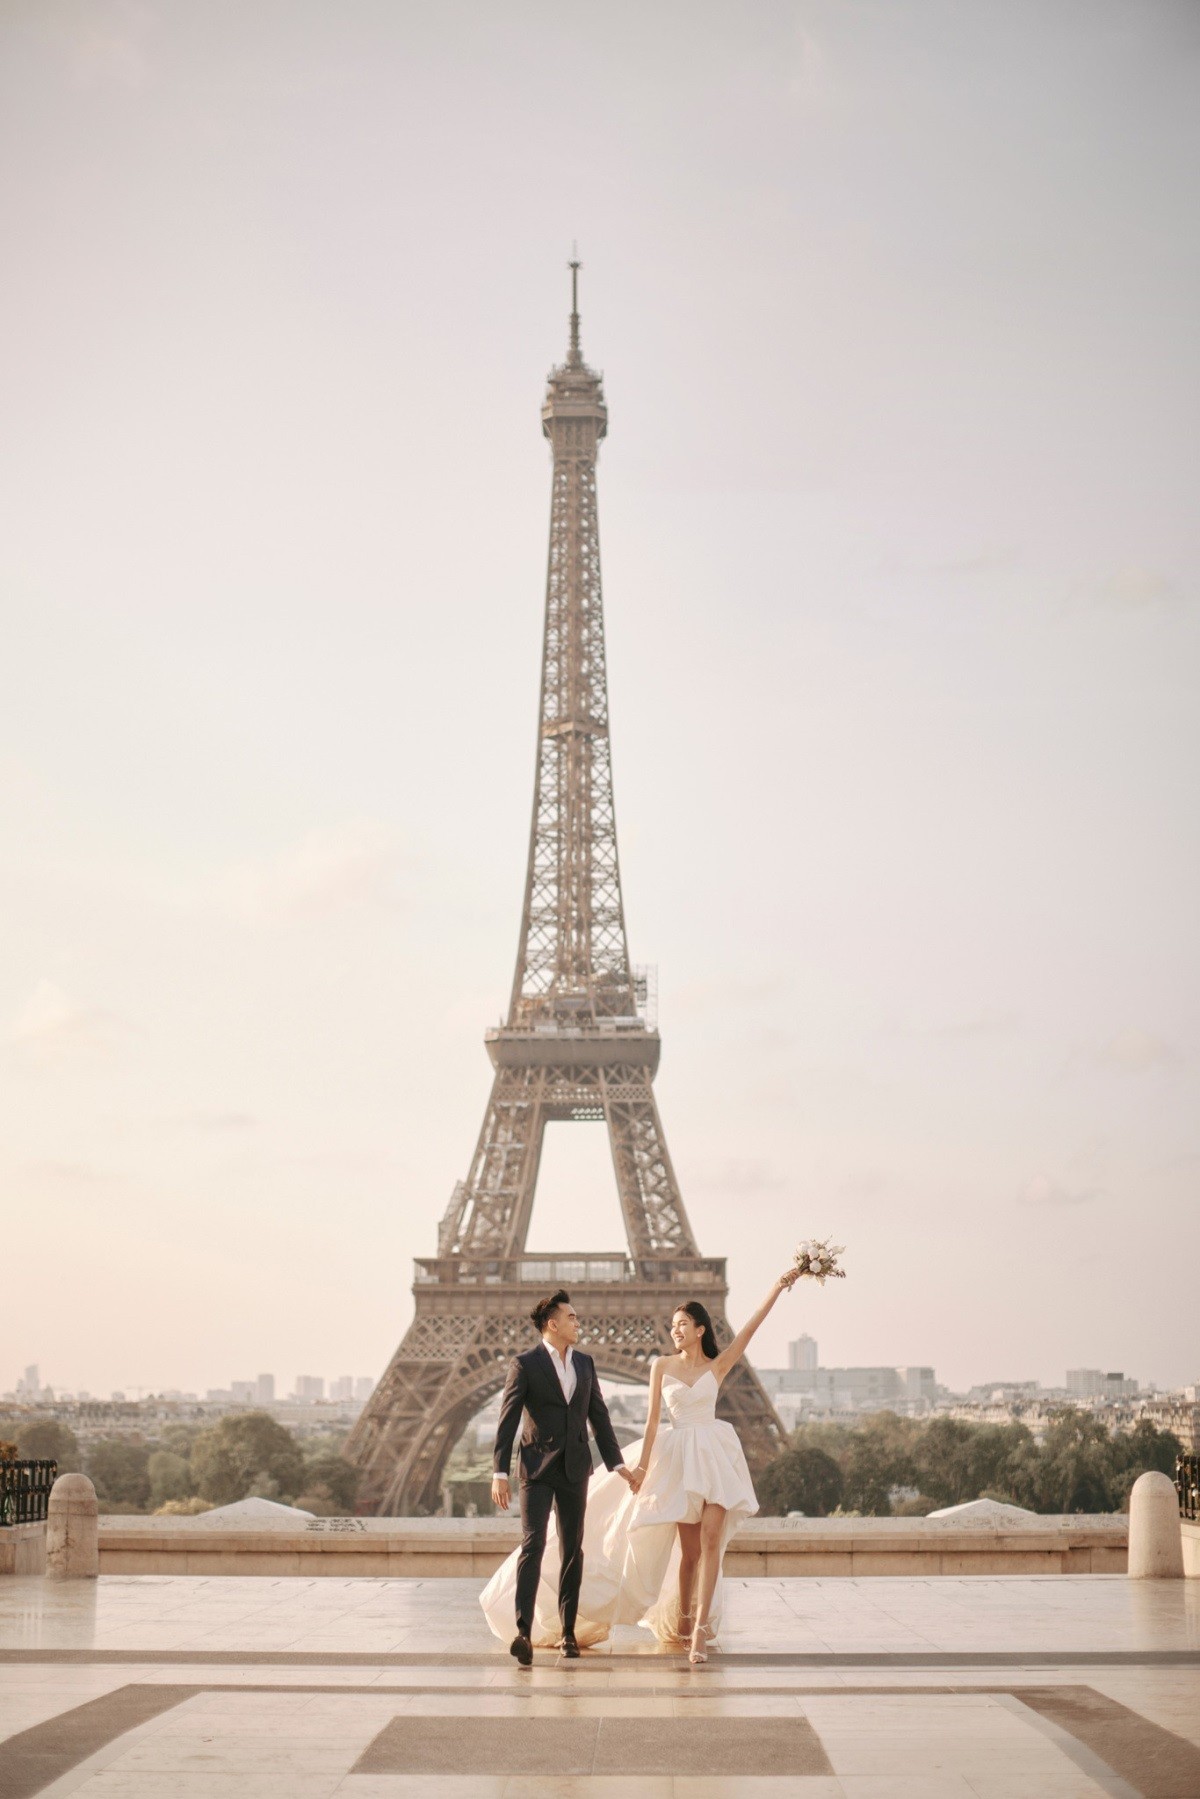  Đôi trai tài gái sắc chụp hình với khung cảnh tháp Eiffel.